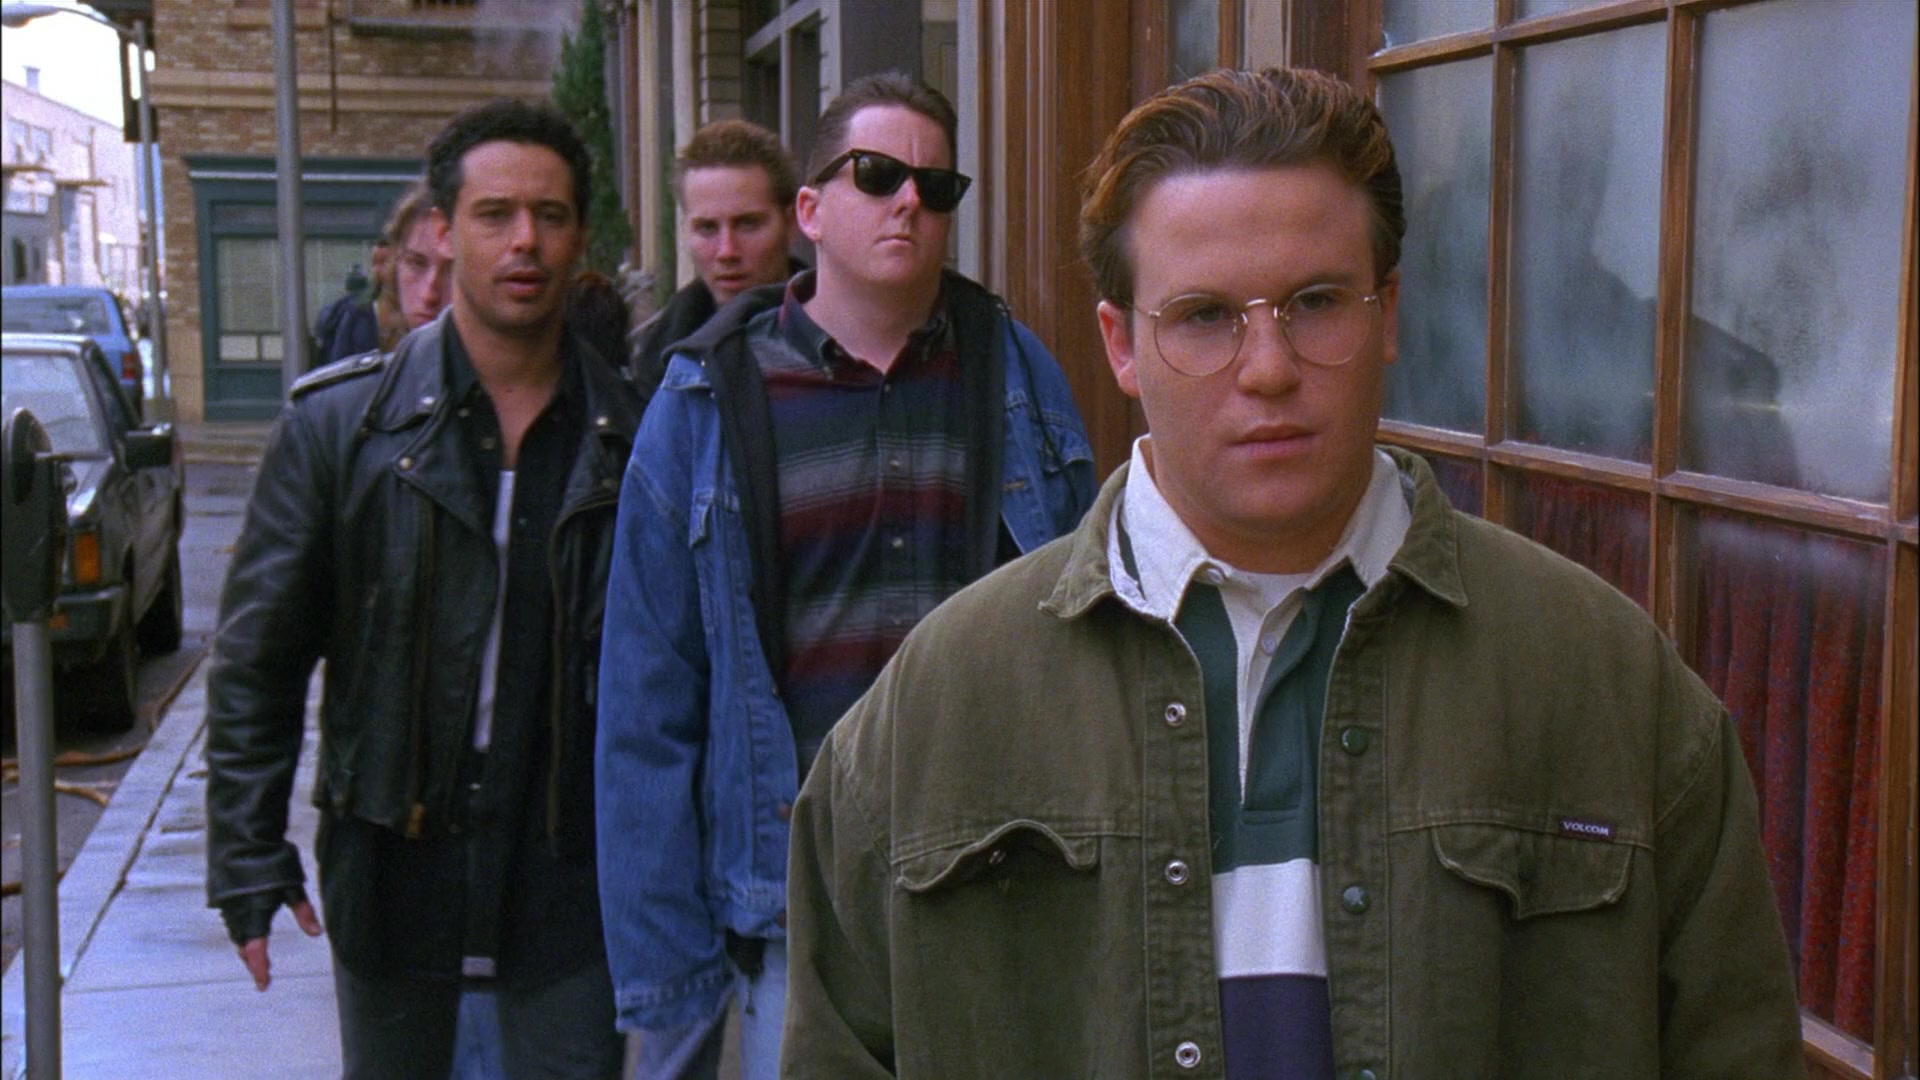 Men In Seinfeld Season 8 Episode 14 